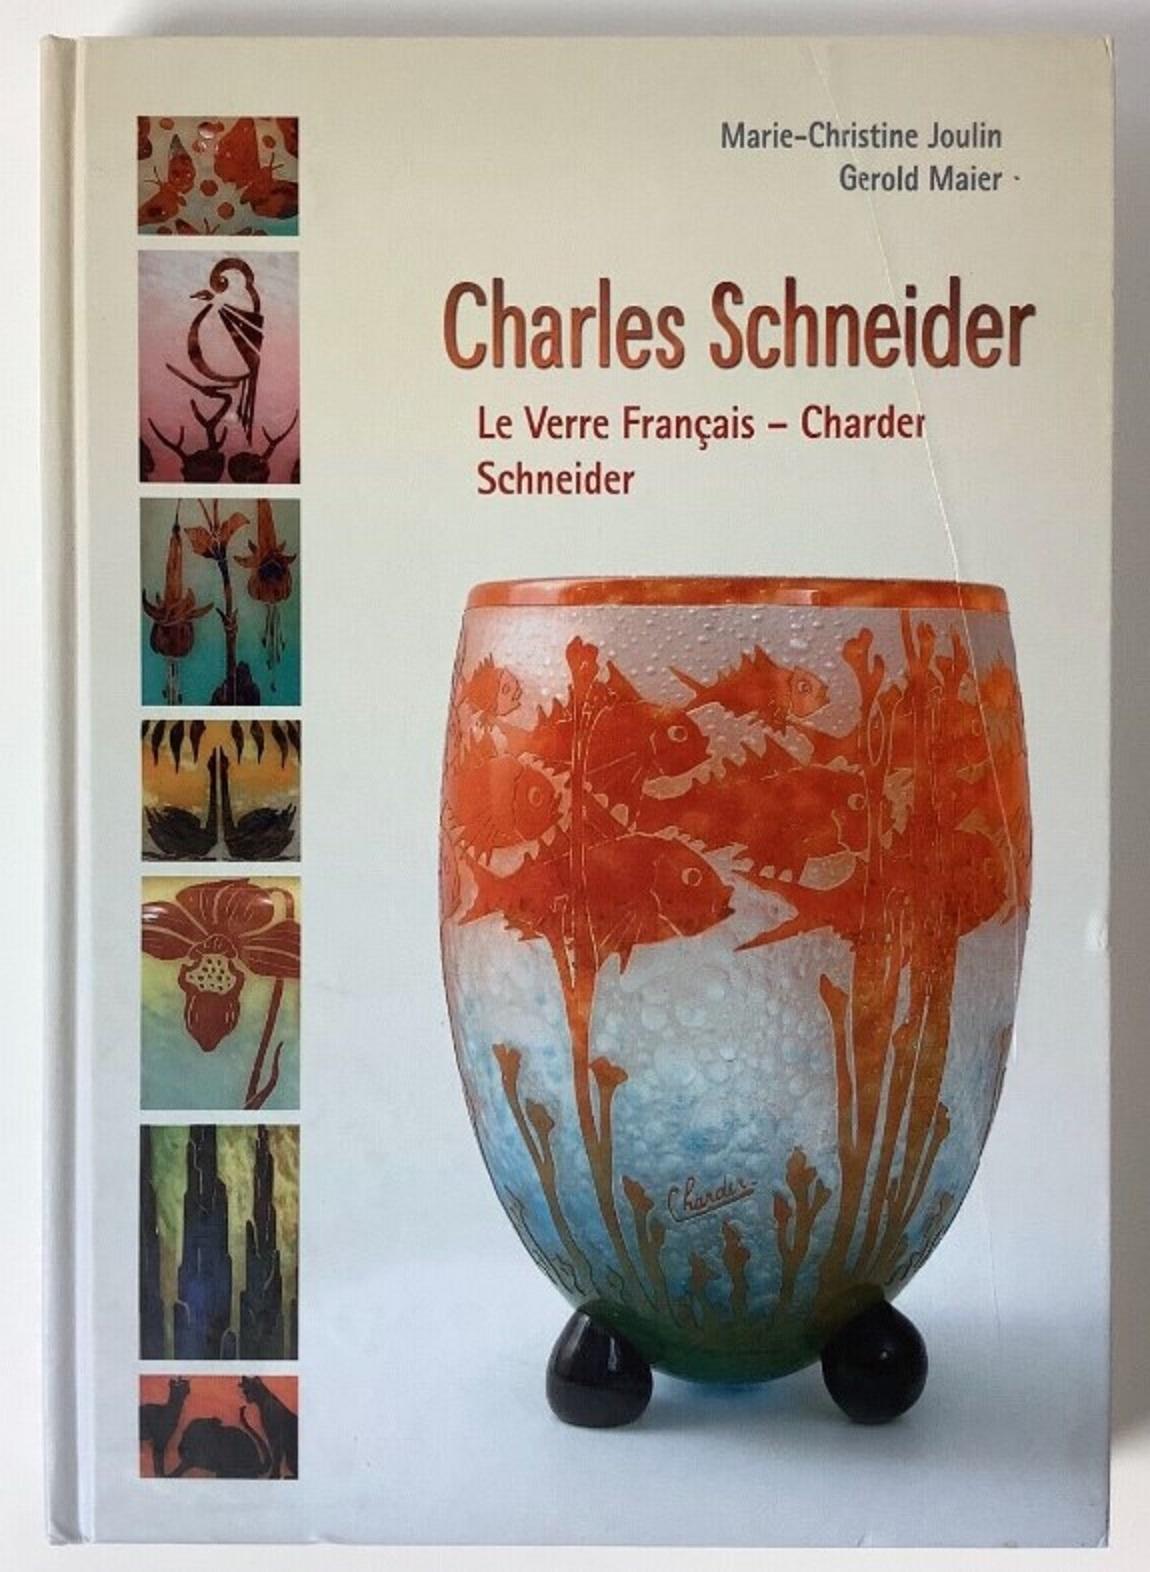 Signe du vase : Schneider
Schneider
Charles Schneider (1881-1953) a étudié l'art dans deux des plus prestigieuses écoles d'art françaises. D'abord à l'Ecole des Beaux-Arts de Nancy, puis à l'Ecole des Beaux-Arts de Paris. Pendant son séjour à Nancy,